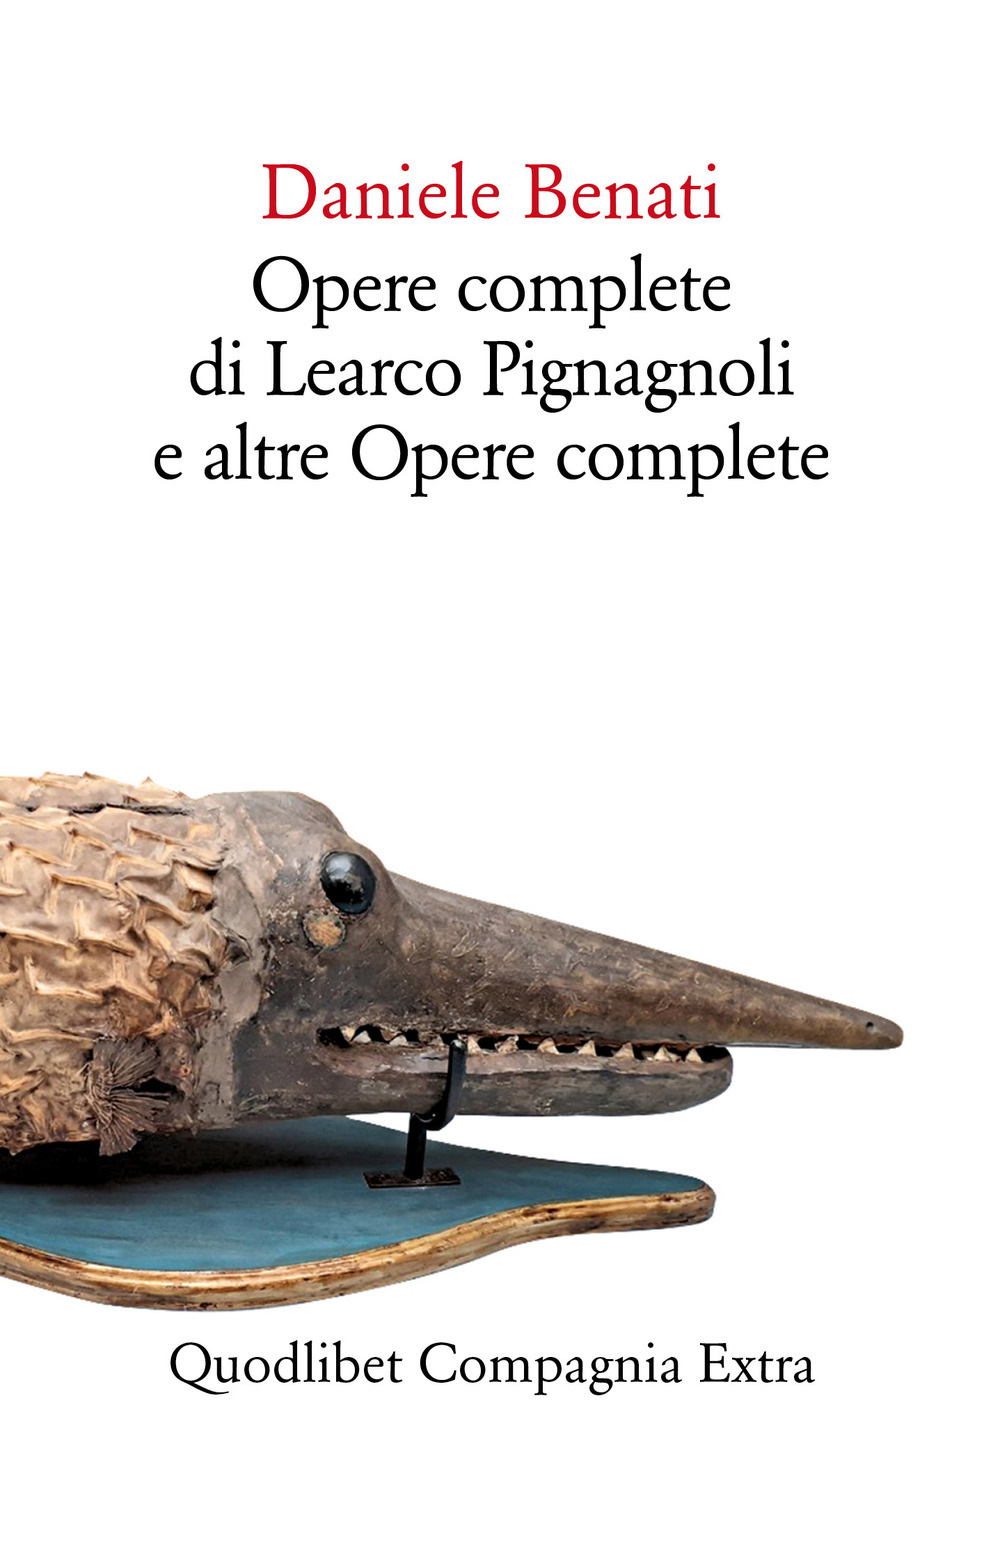 Opere complete di Learco Pignagnoli e altre opere complete